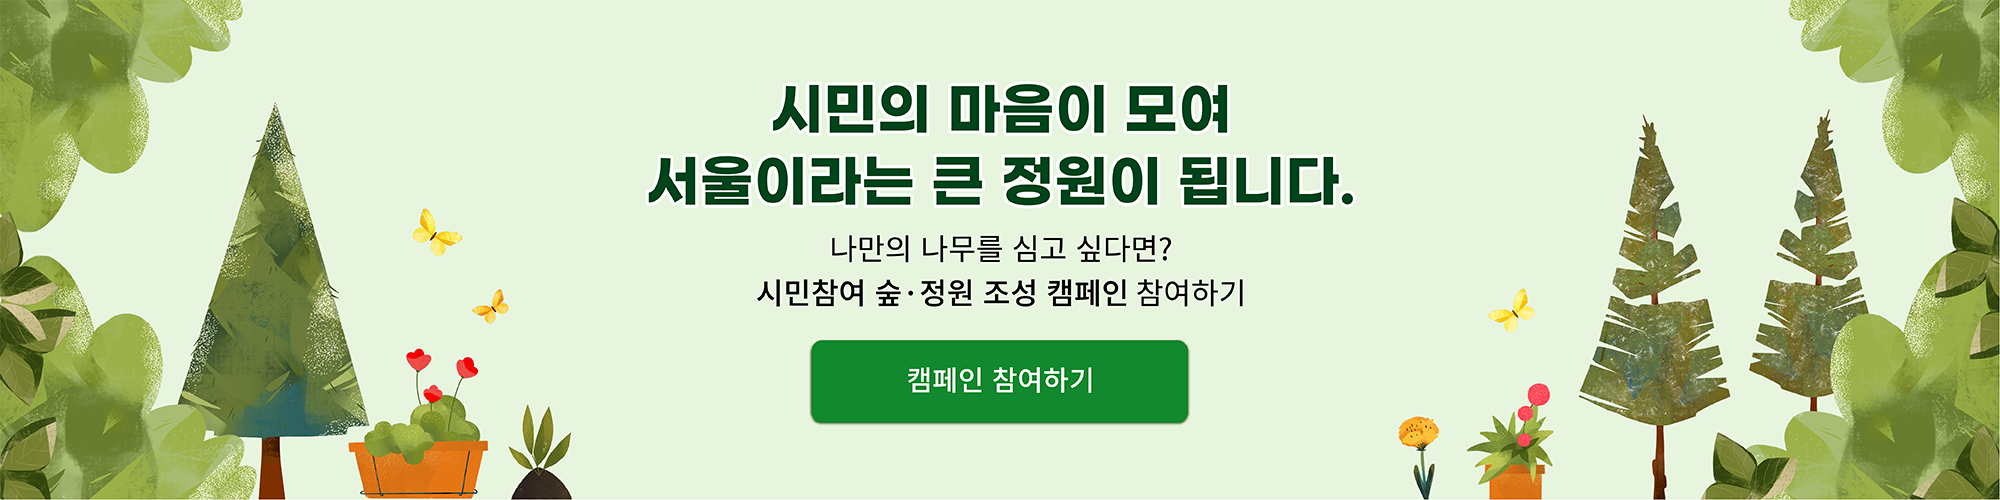 시민의 마음이 모여 서울이라는 큰 정원이 됩니다.
나만의 나무를 심고 싶다면? 시민참여 숲·정원 조성 캠페인 참여하기
캠페인 참여하기